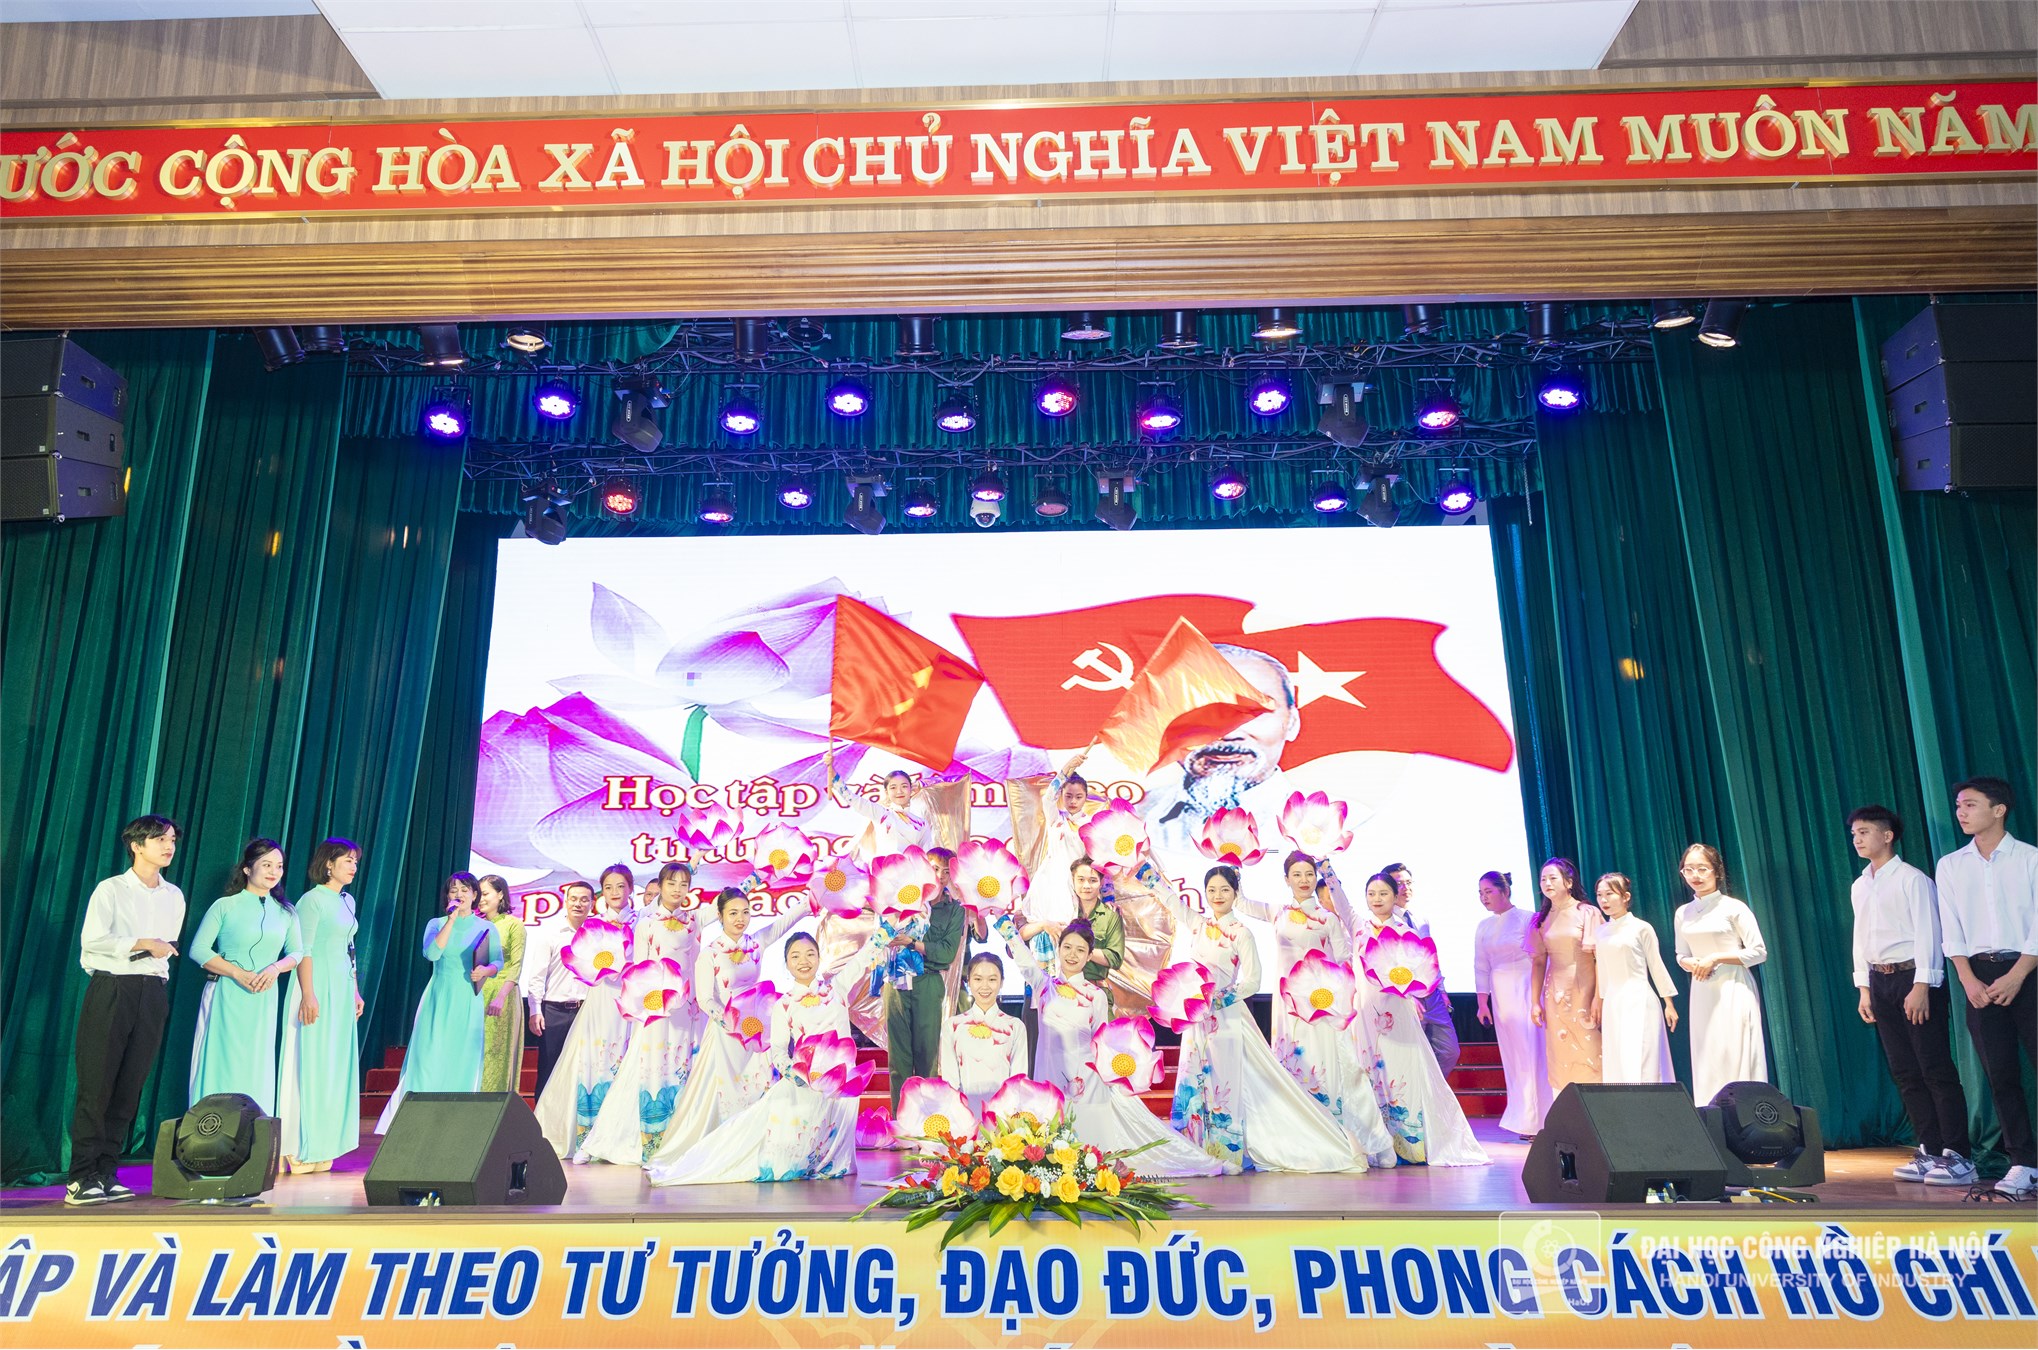 Liên chi bộ: TT Việt Nhật - Khoa Lý luận chính trị - Phòng thanh tra - Trung tâm hỗ trợ sinh viên giành giải Nhì toàn đoàn tại cuộc thi Học tập và làm theo tư tưởng, đạo đức, phong cách Hồ Chí Minh năm 2023